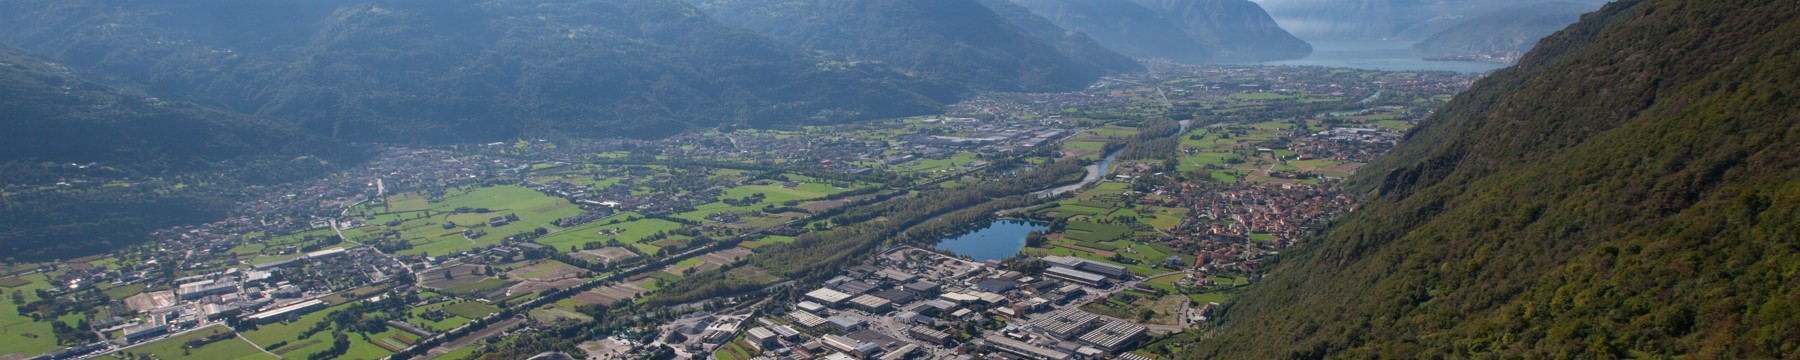 Vista aerea di Rogno (capoluogo) e del "laghetto" nel fondo della Valle Camonica, con vista che si estende sino al Lago d'Iseo